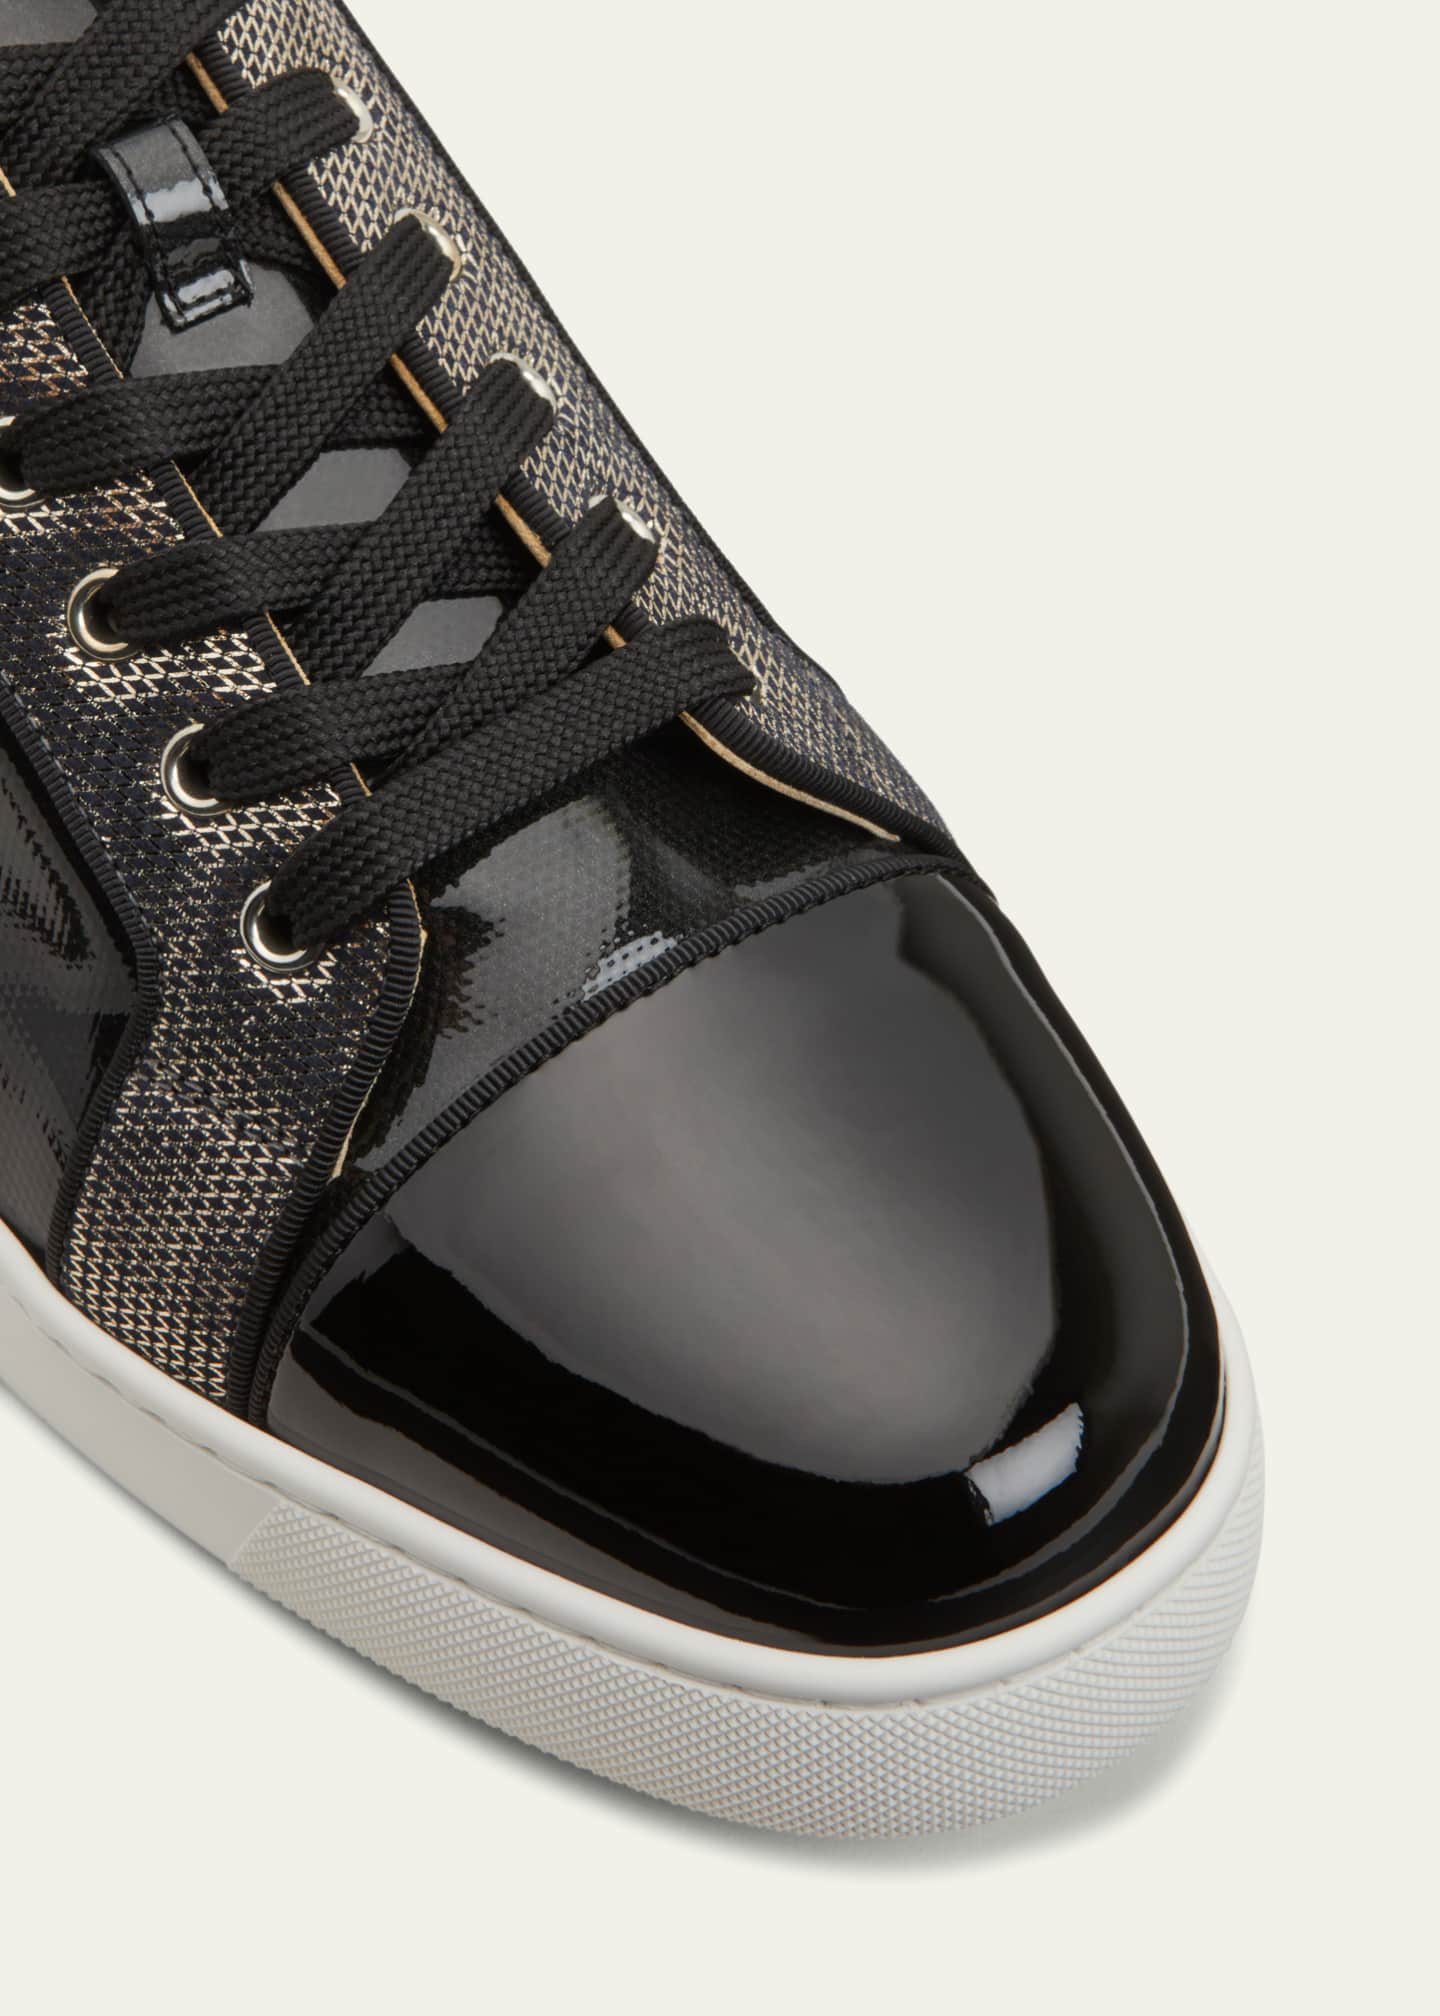 Louboutin Men's Junior Patent Leather Low-Top Sneakers Bergdorf Goodman